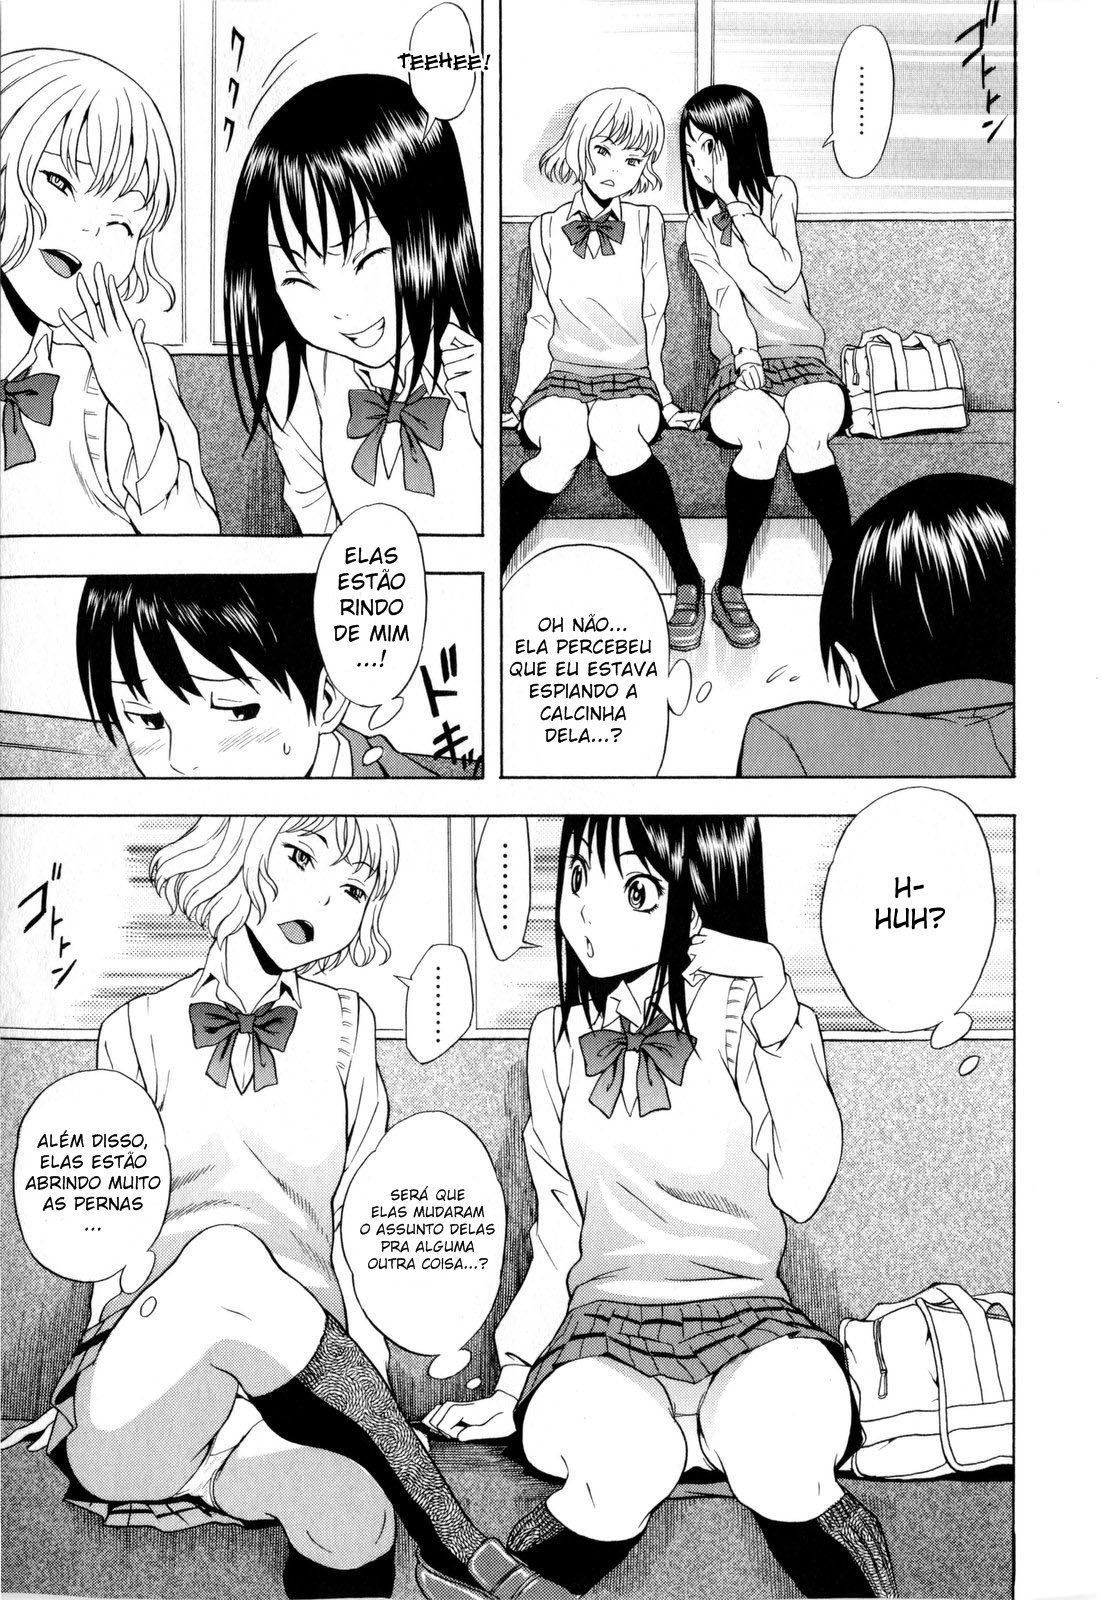 Estudantes levantando à saia – hentaihome (3)